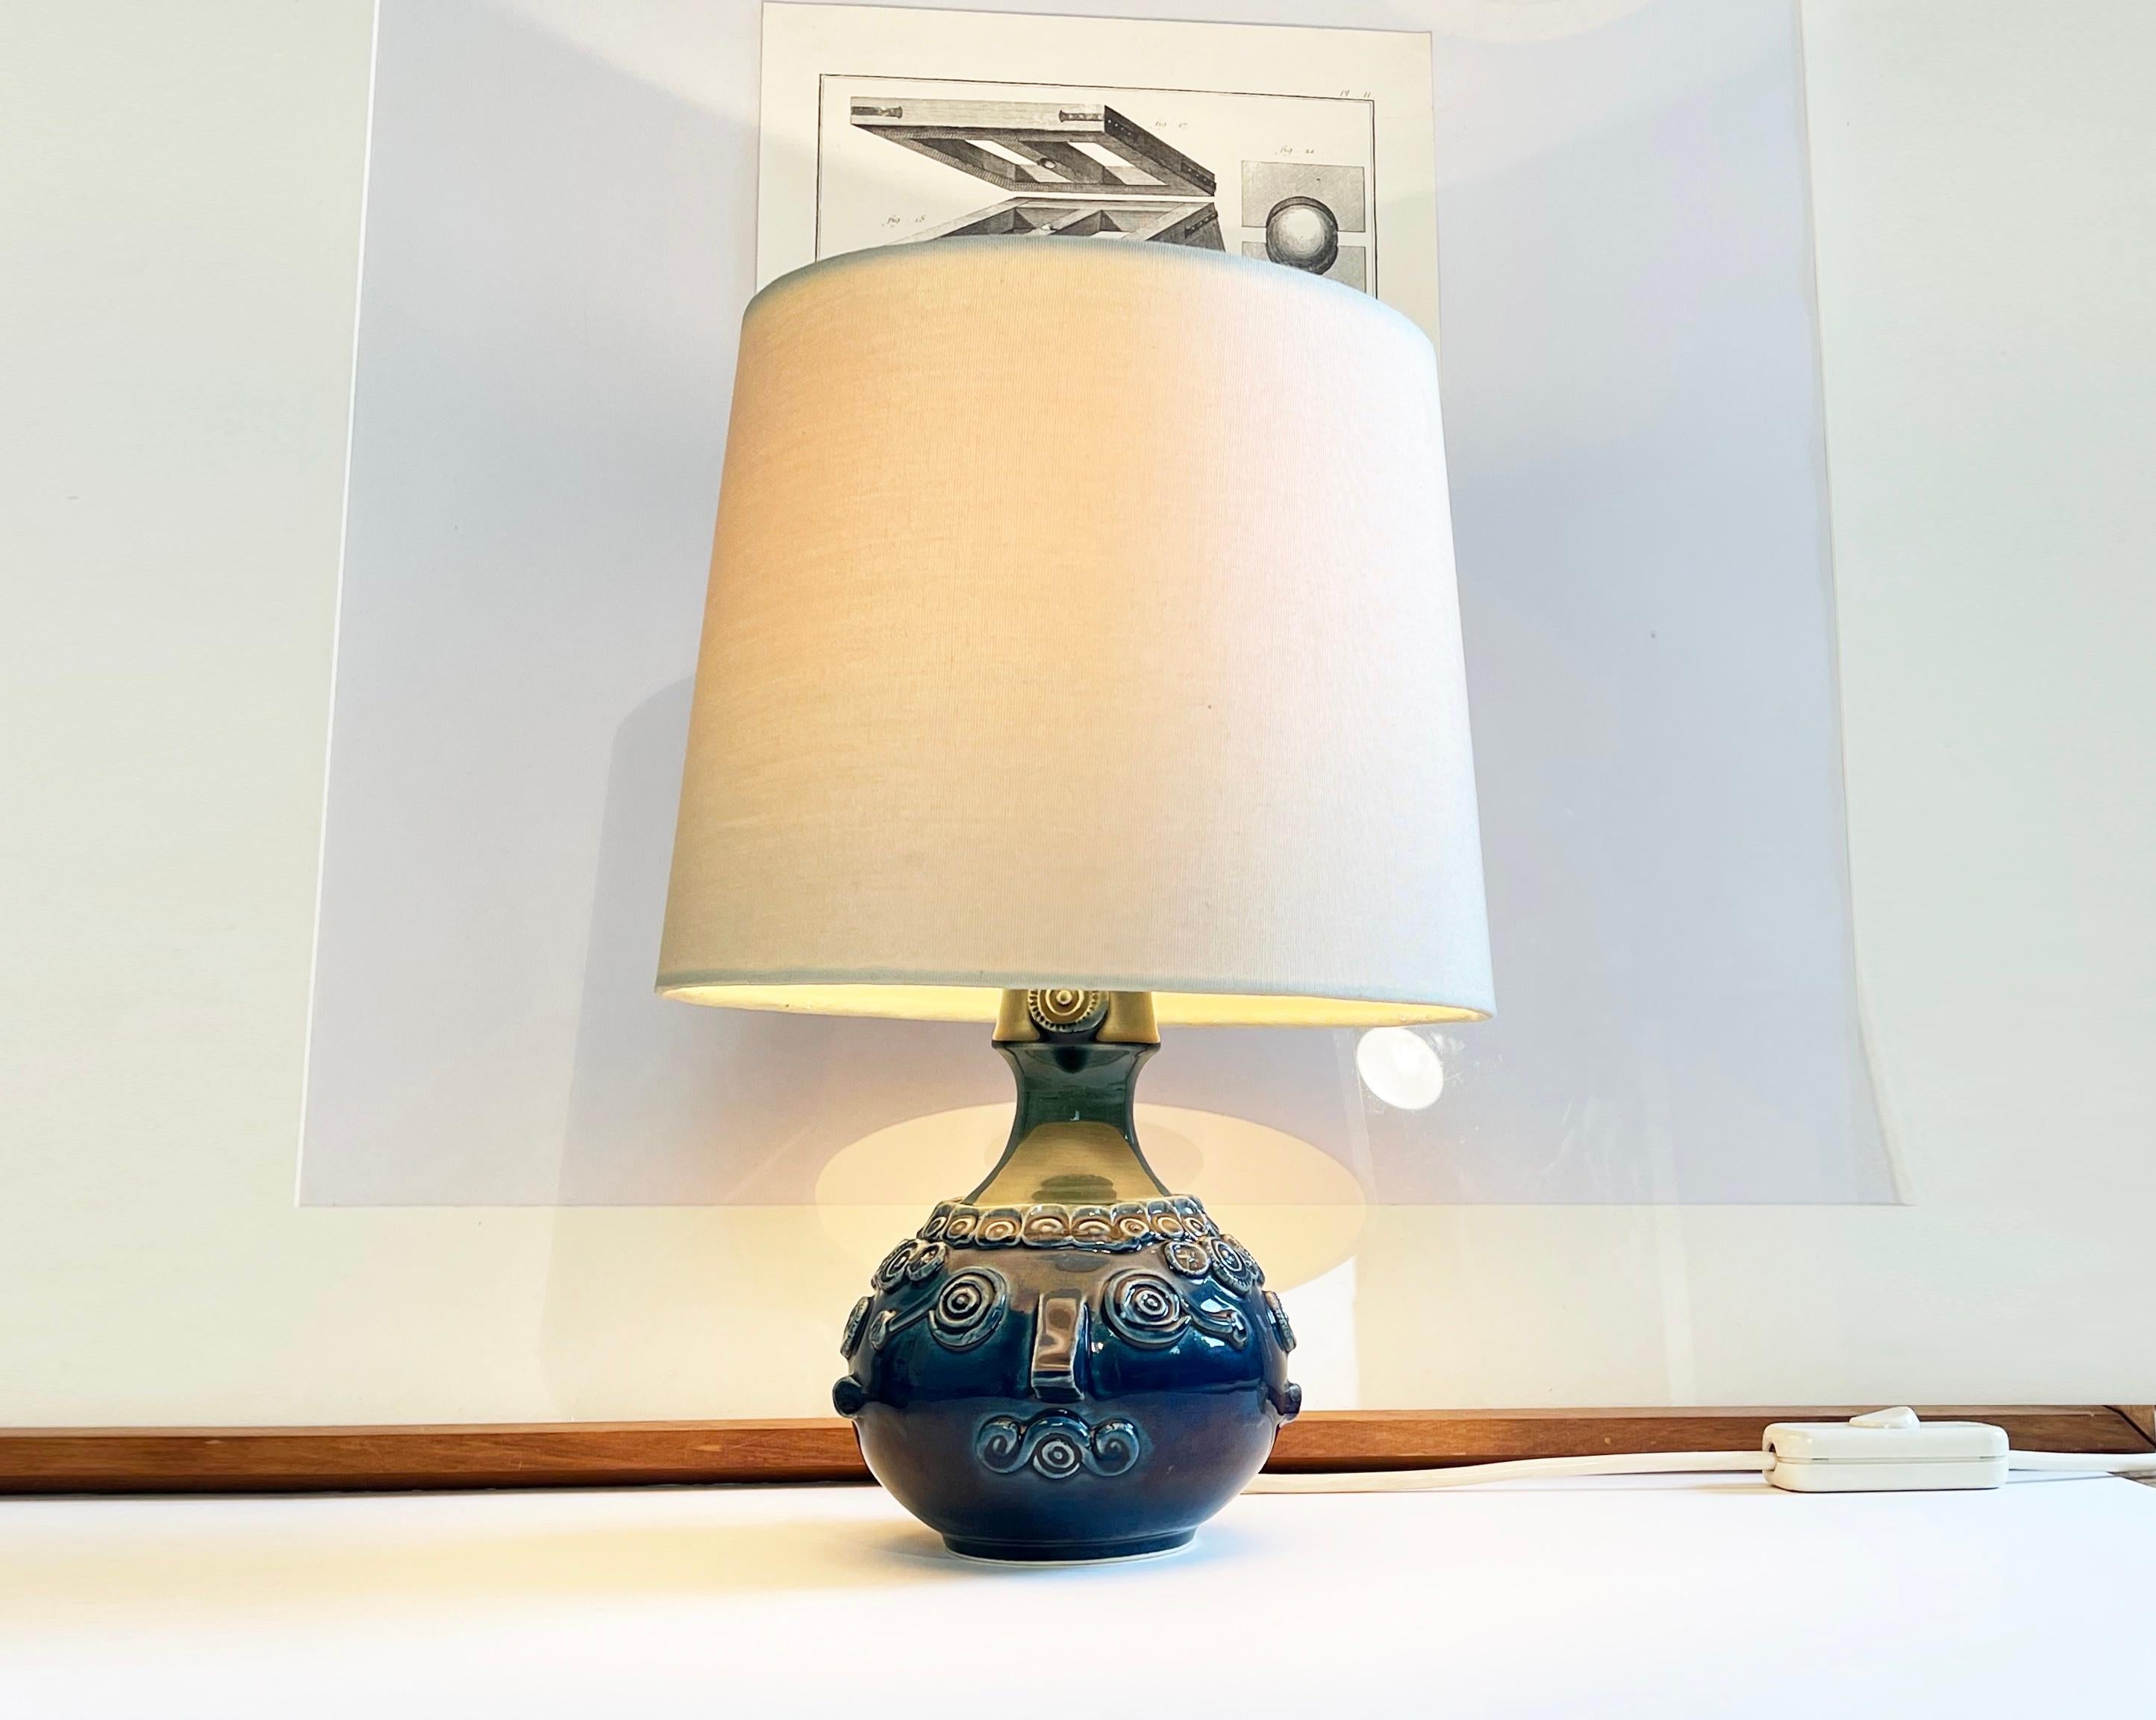 Lampe d'art scandinave expressive de Bjørn Wiinblad pour la collection 'Studio Line' de Rosenthal.
La base est en céramique avec une glaçure bleue, qui devient plus verte vers le haut.
Le motif est tout simplement magnifique, sous la forme d'une